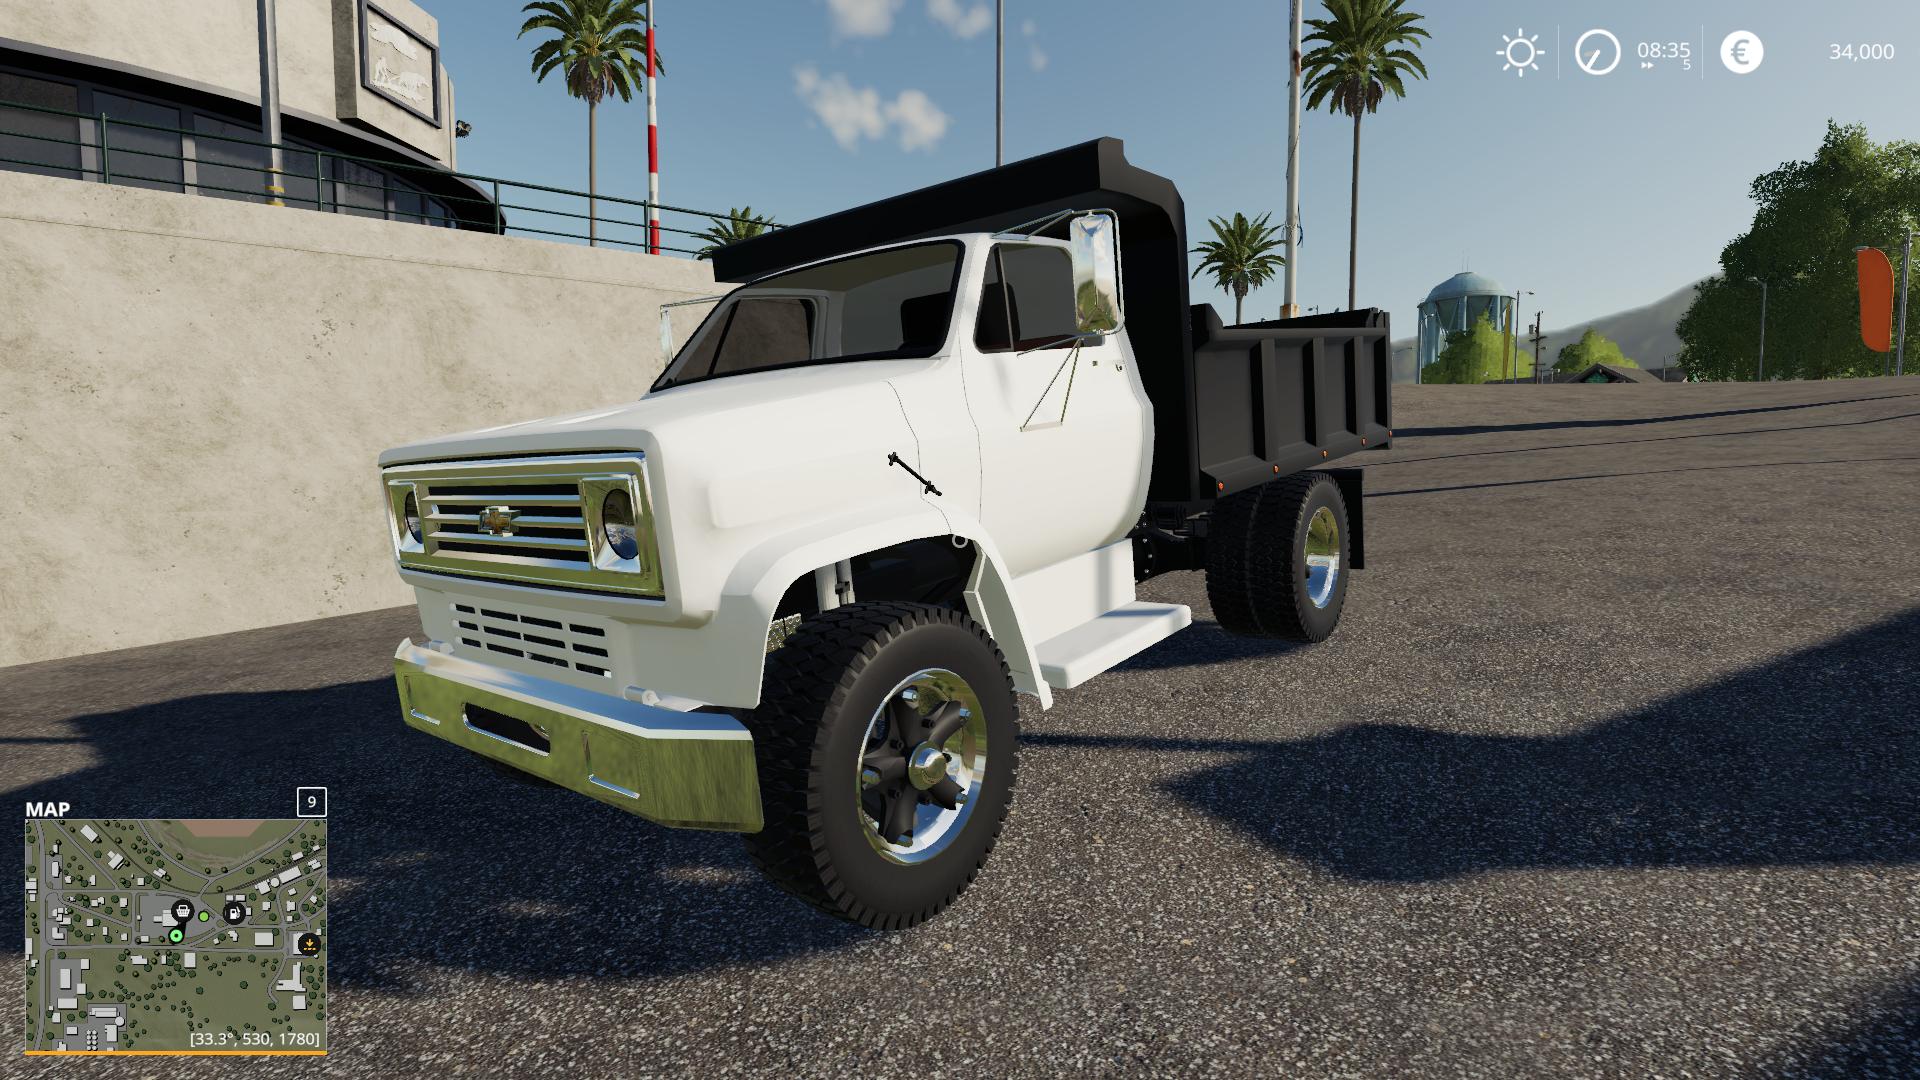 Chevy C70 Dump Truck v1.0 FS19 Farming Simulator 19 Mod FS19 mod.